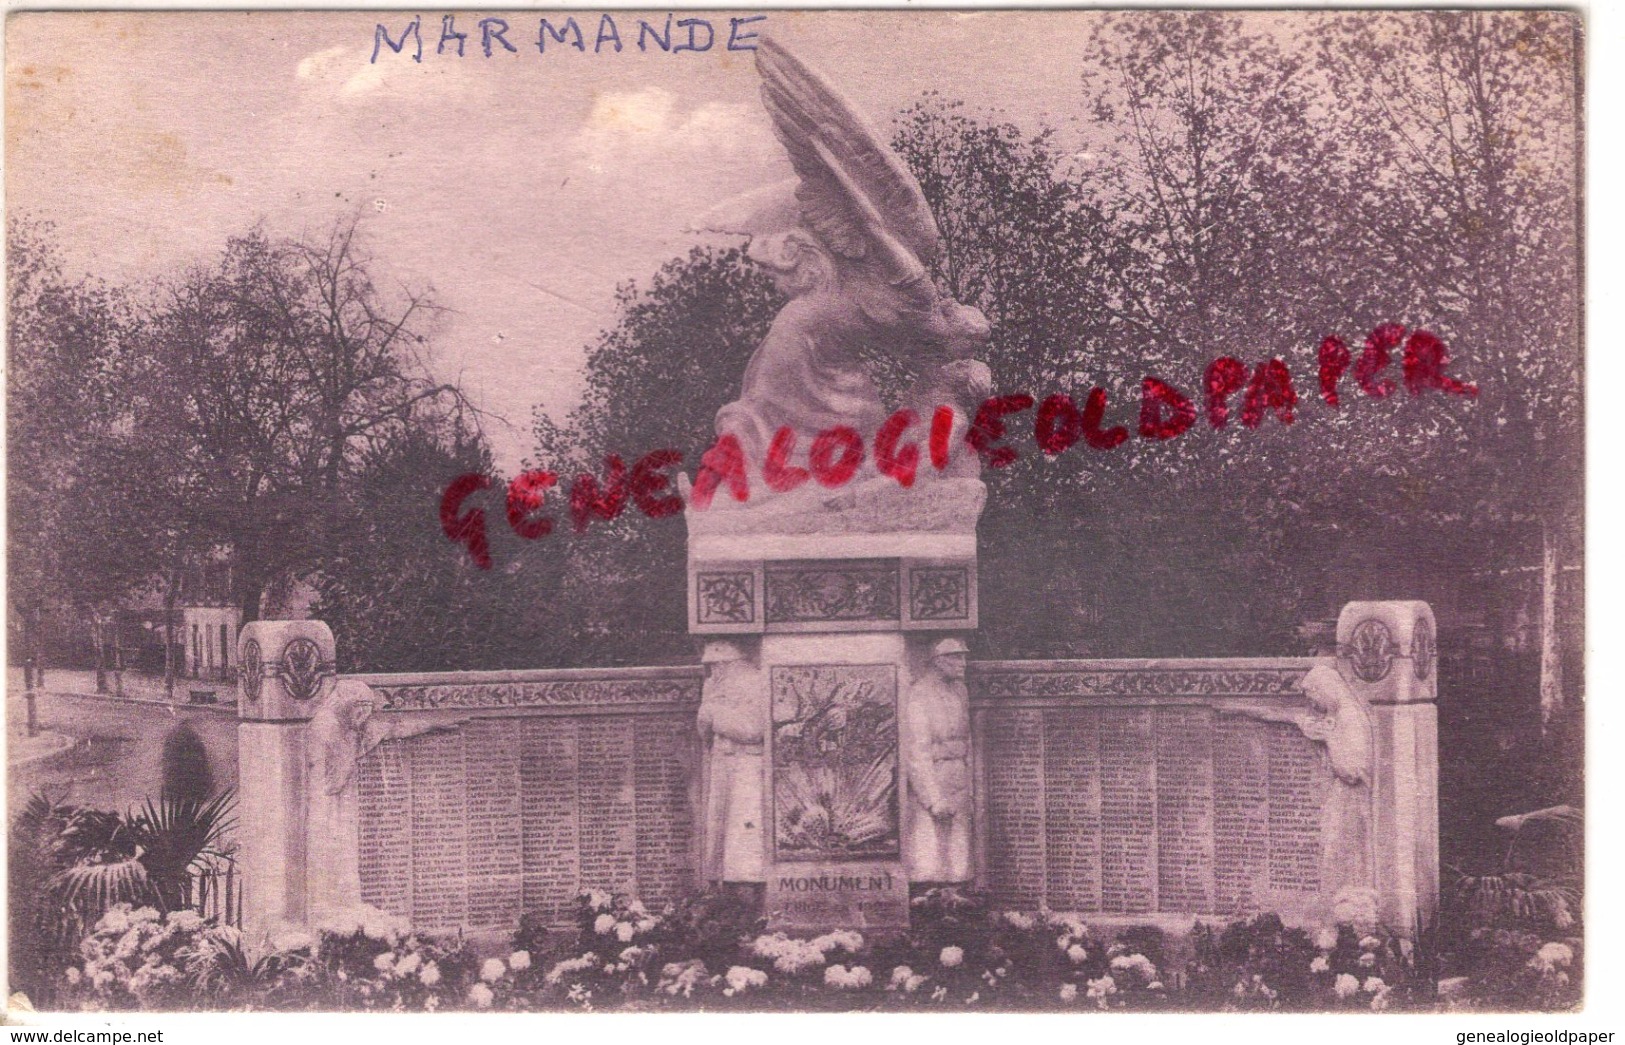 47 - MARMANDE - MONUMENT AUX MORTS DE LA GRANDE GUERRE PAR LAMOURDEDIEU - Marmande